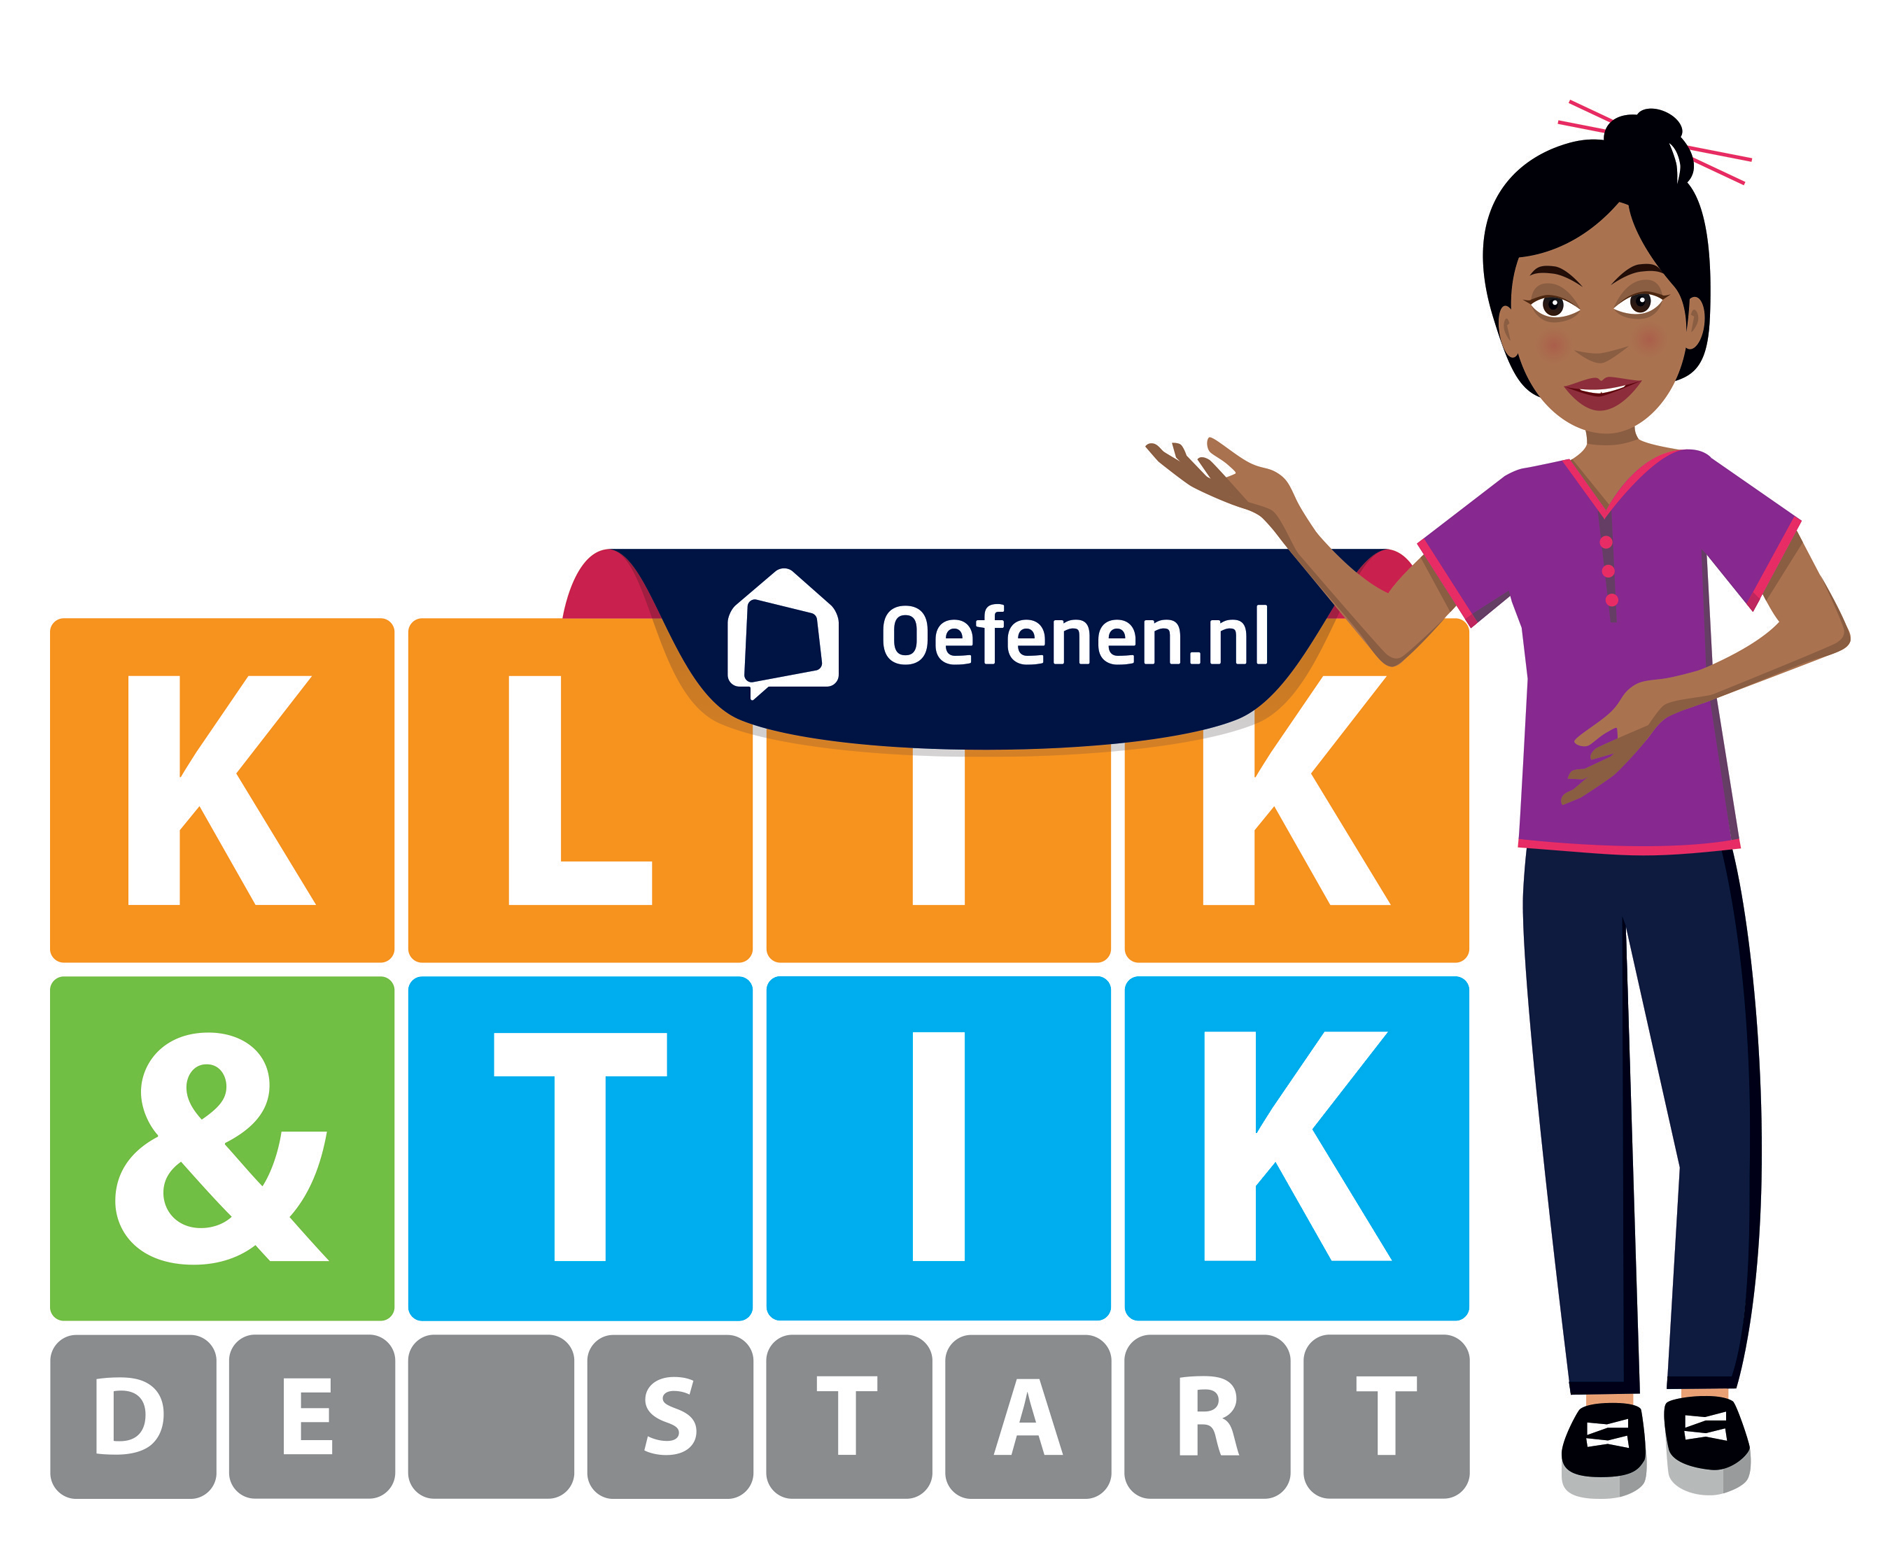 Klik en tik de start met Jomi op Oefenen.nl